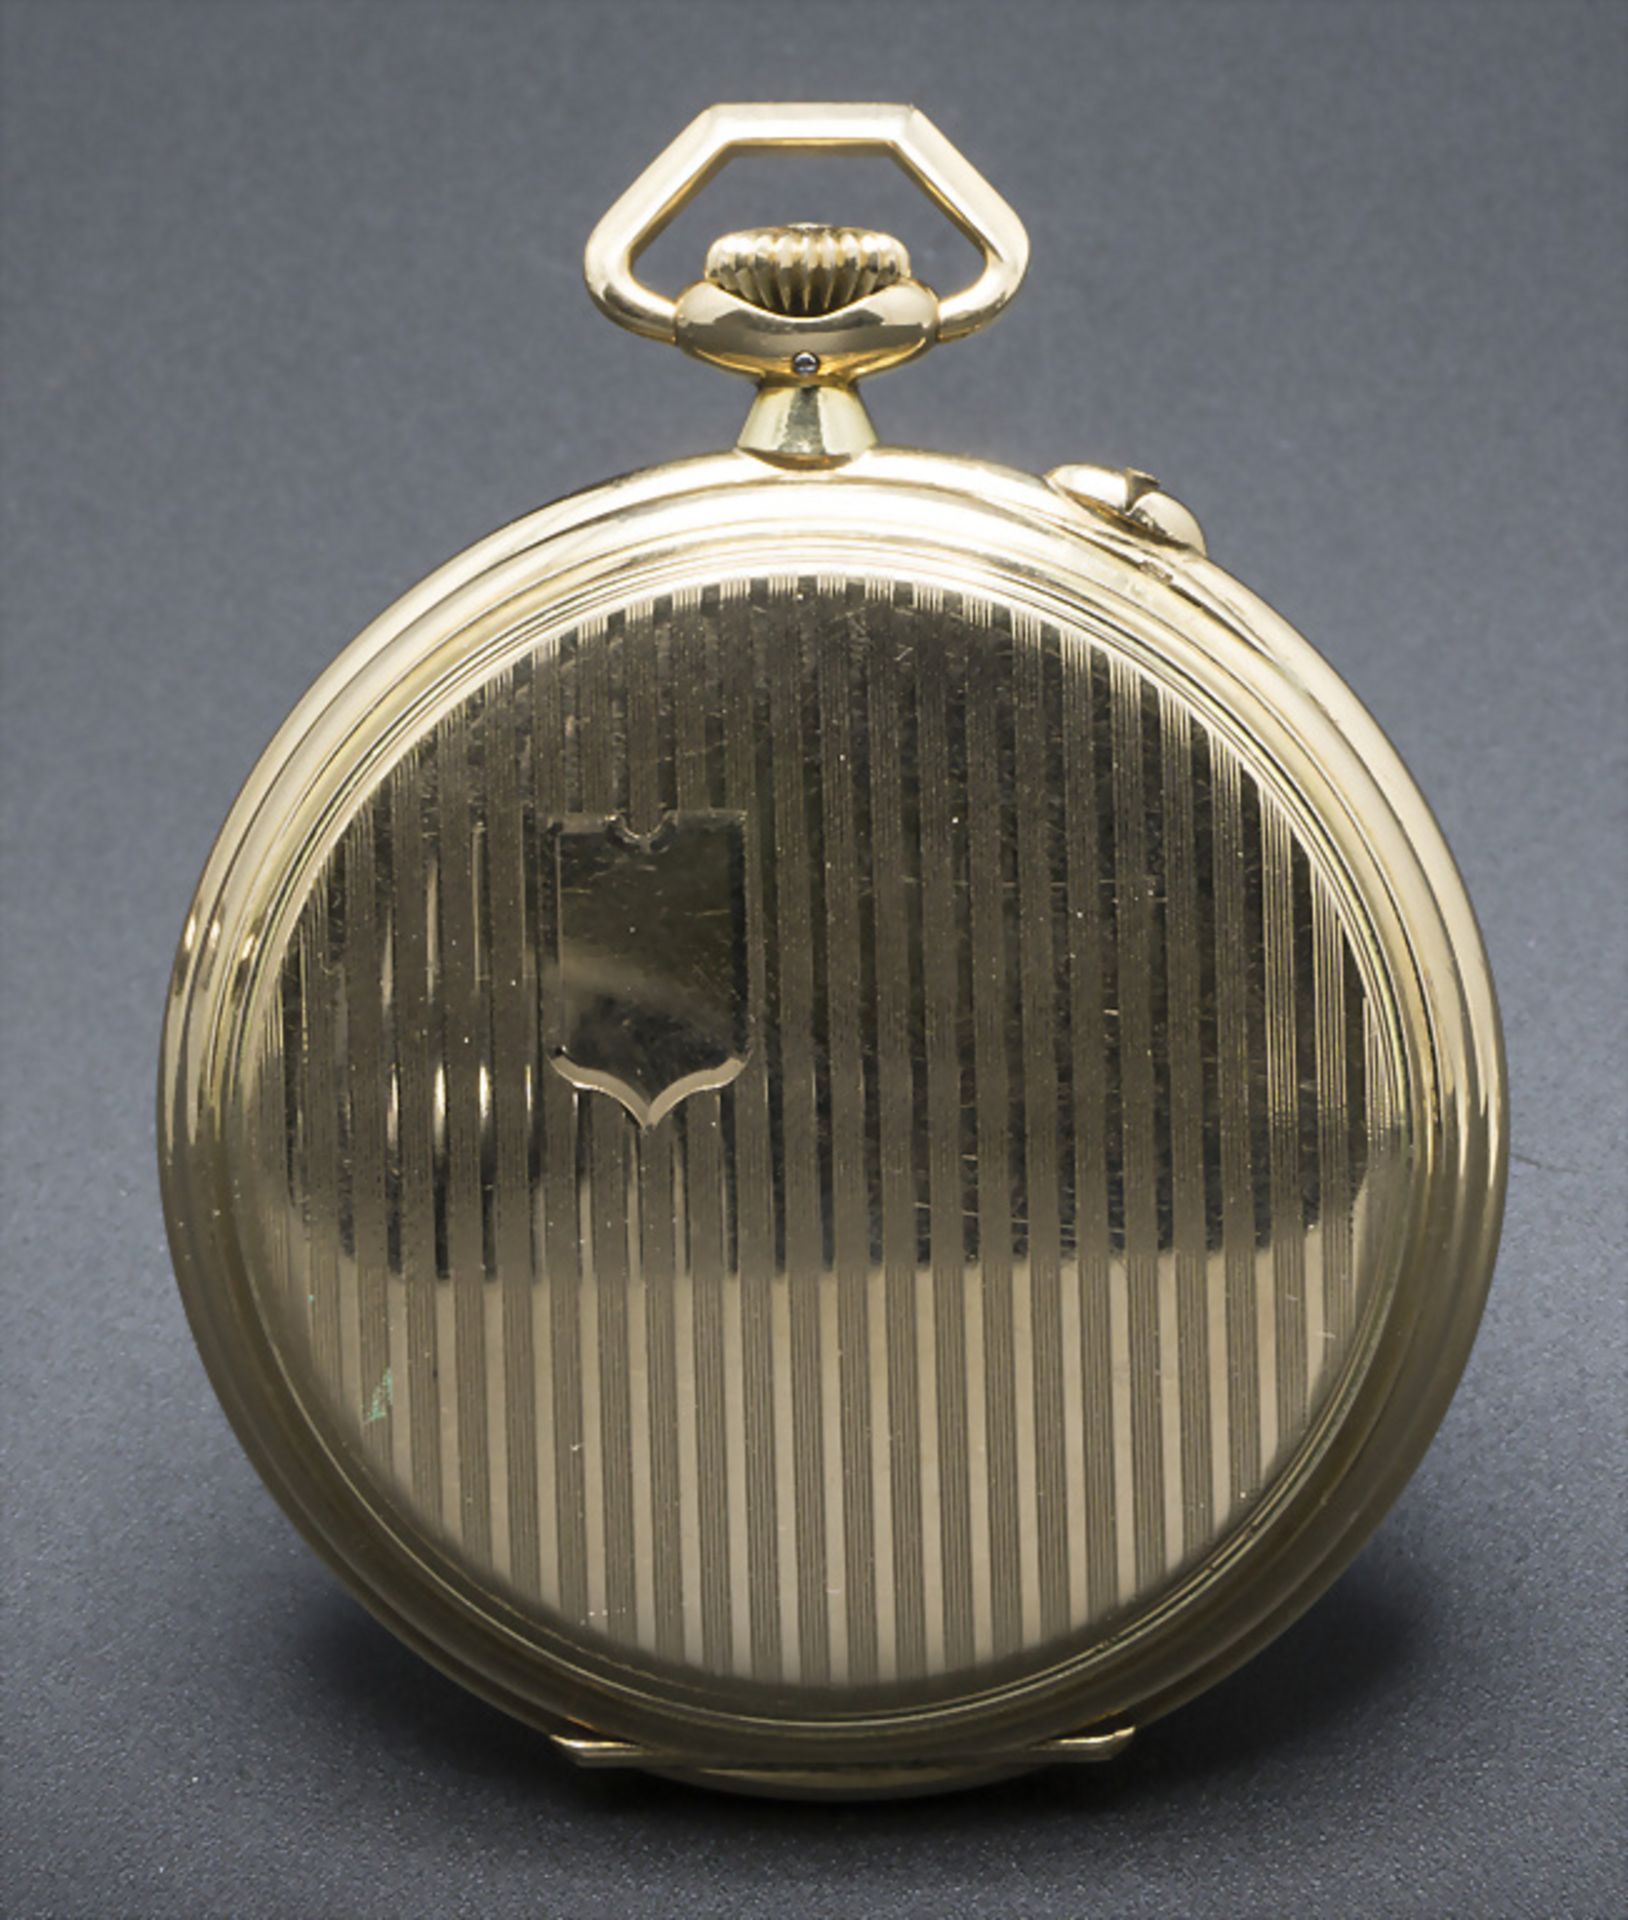 Offene Herrentaschenuhr / A 14k gold pocket watch, J. Assmann, Glashütte in Sachsen, um 1915 - Image 4 of 6